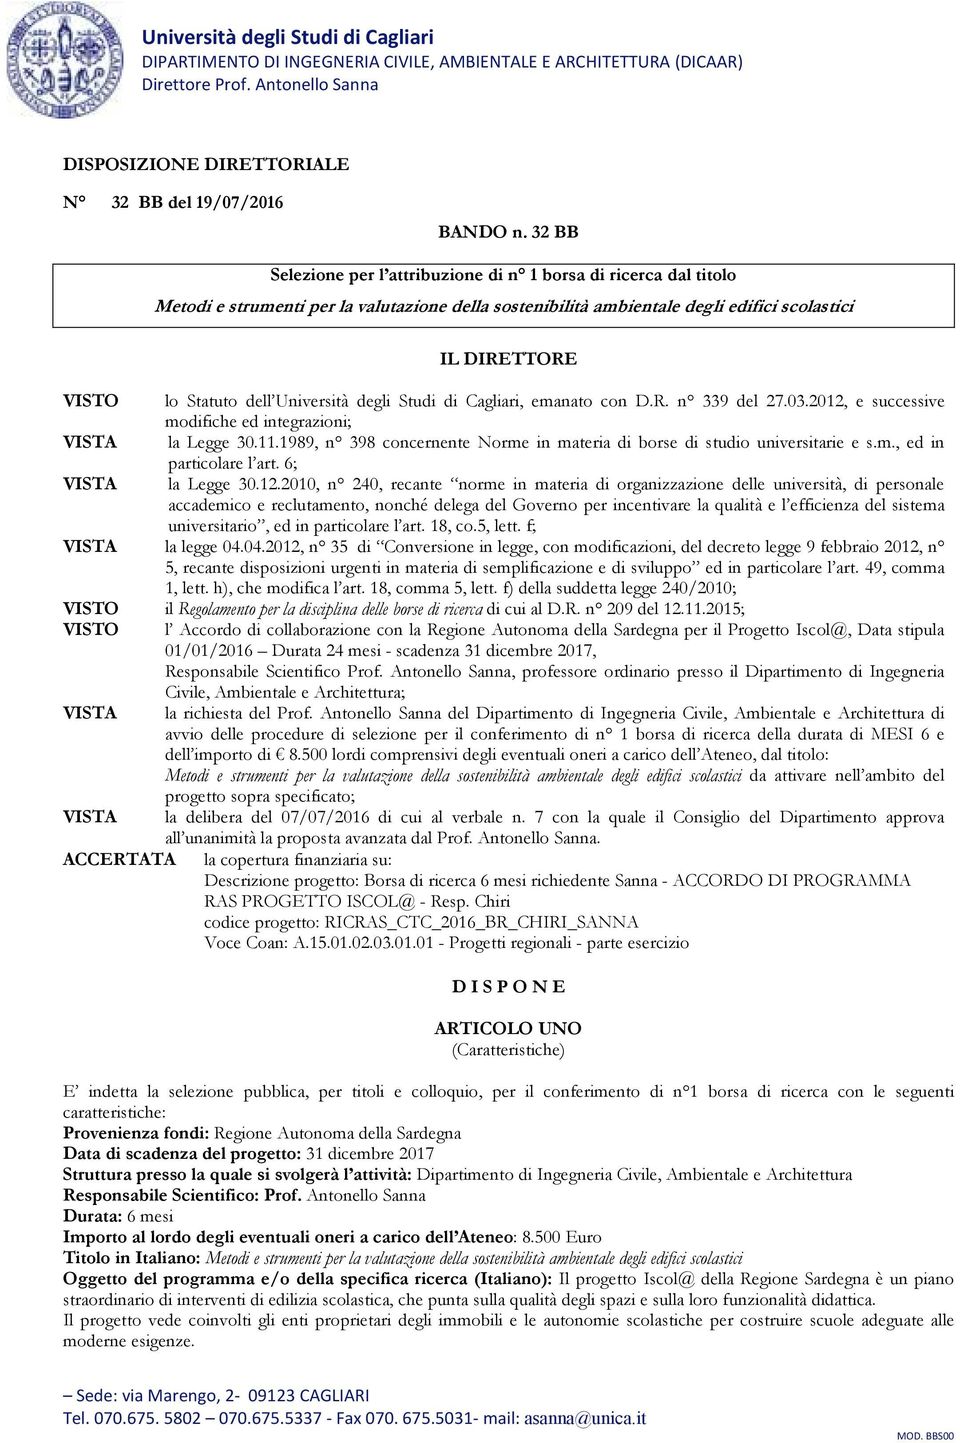 Università degli Studi di Cagliari, emanato con D.R. n 339 del 27.03.2012, e successive modifiche ed integrazioni; VISTA la Legge 30.11.